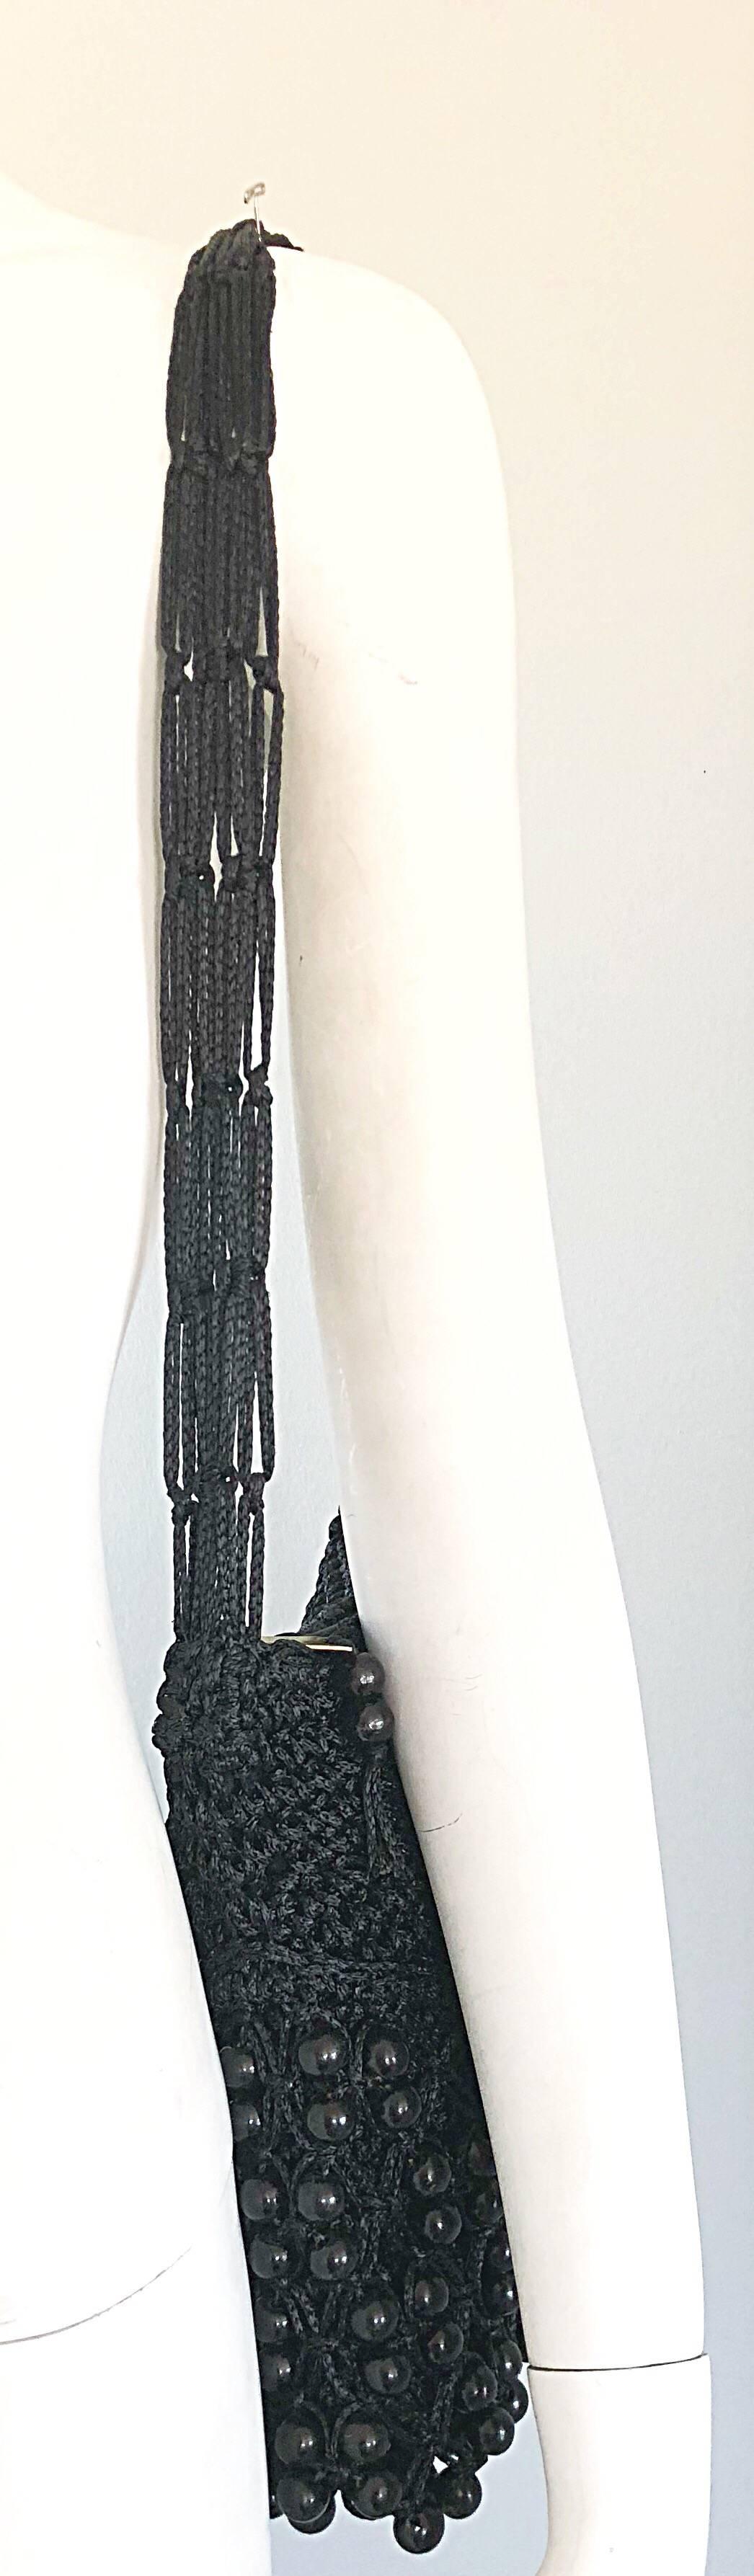 Fantastique sac à bandoulière vintage WALBORG en tricot crochet noir perlé ! Doté d'une bandoulière à plusieurs brins qui s'adapte confortablement à l'épaule. Ce sac est unique car il présente le même perlage en laque noire sur le devant et le dos